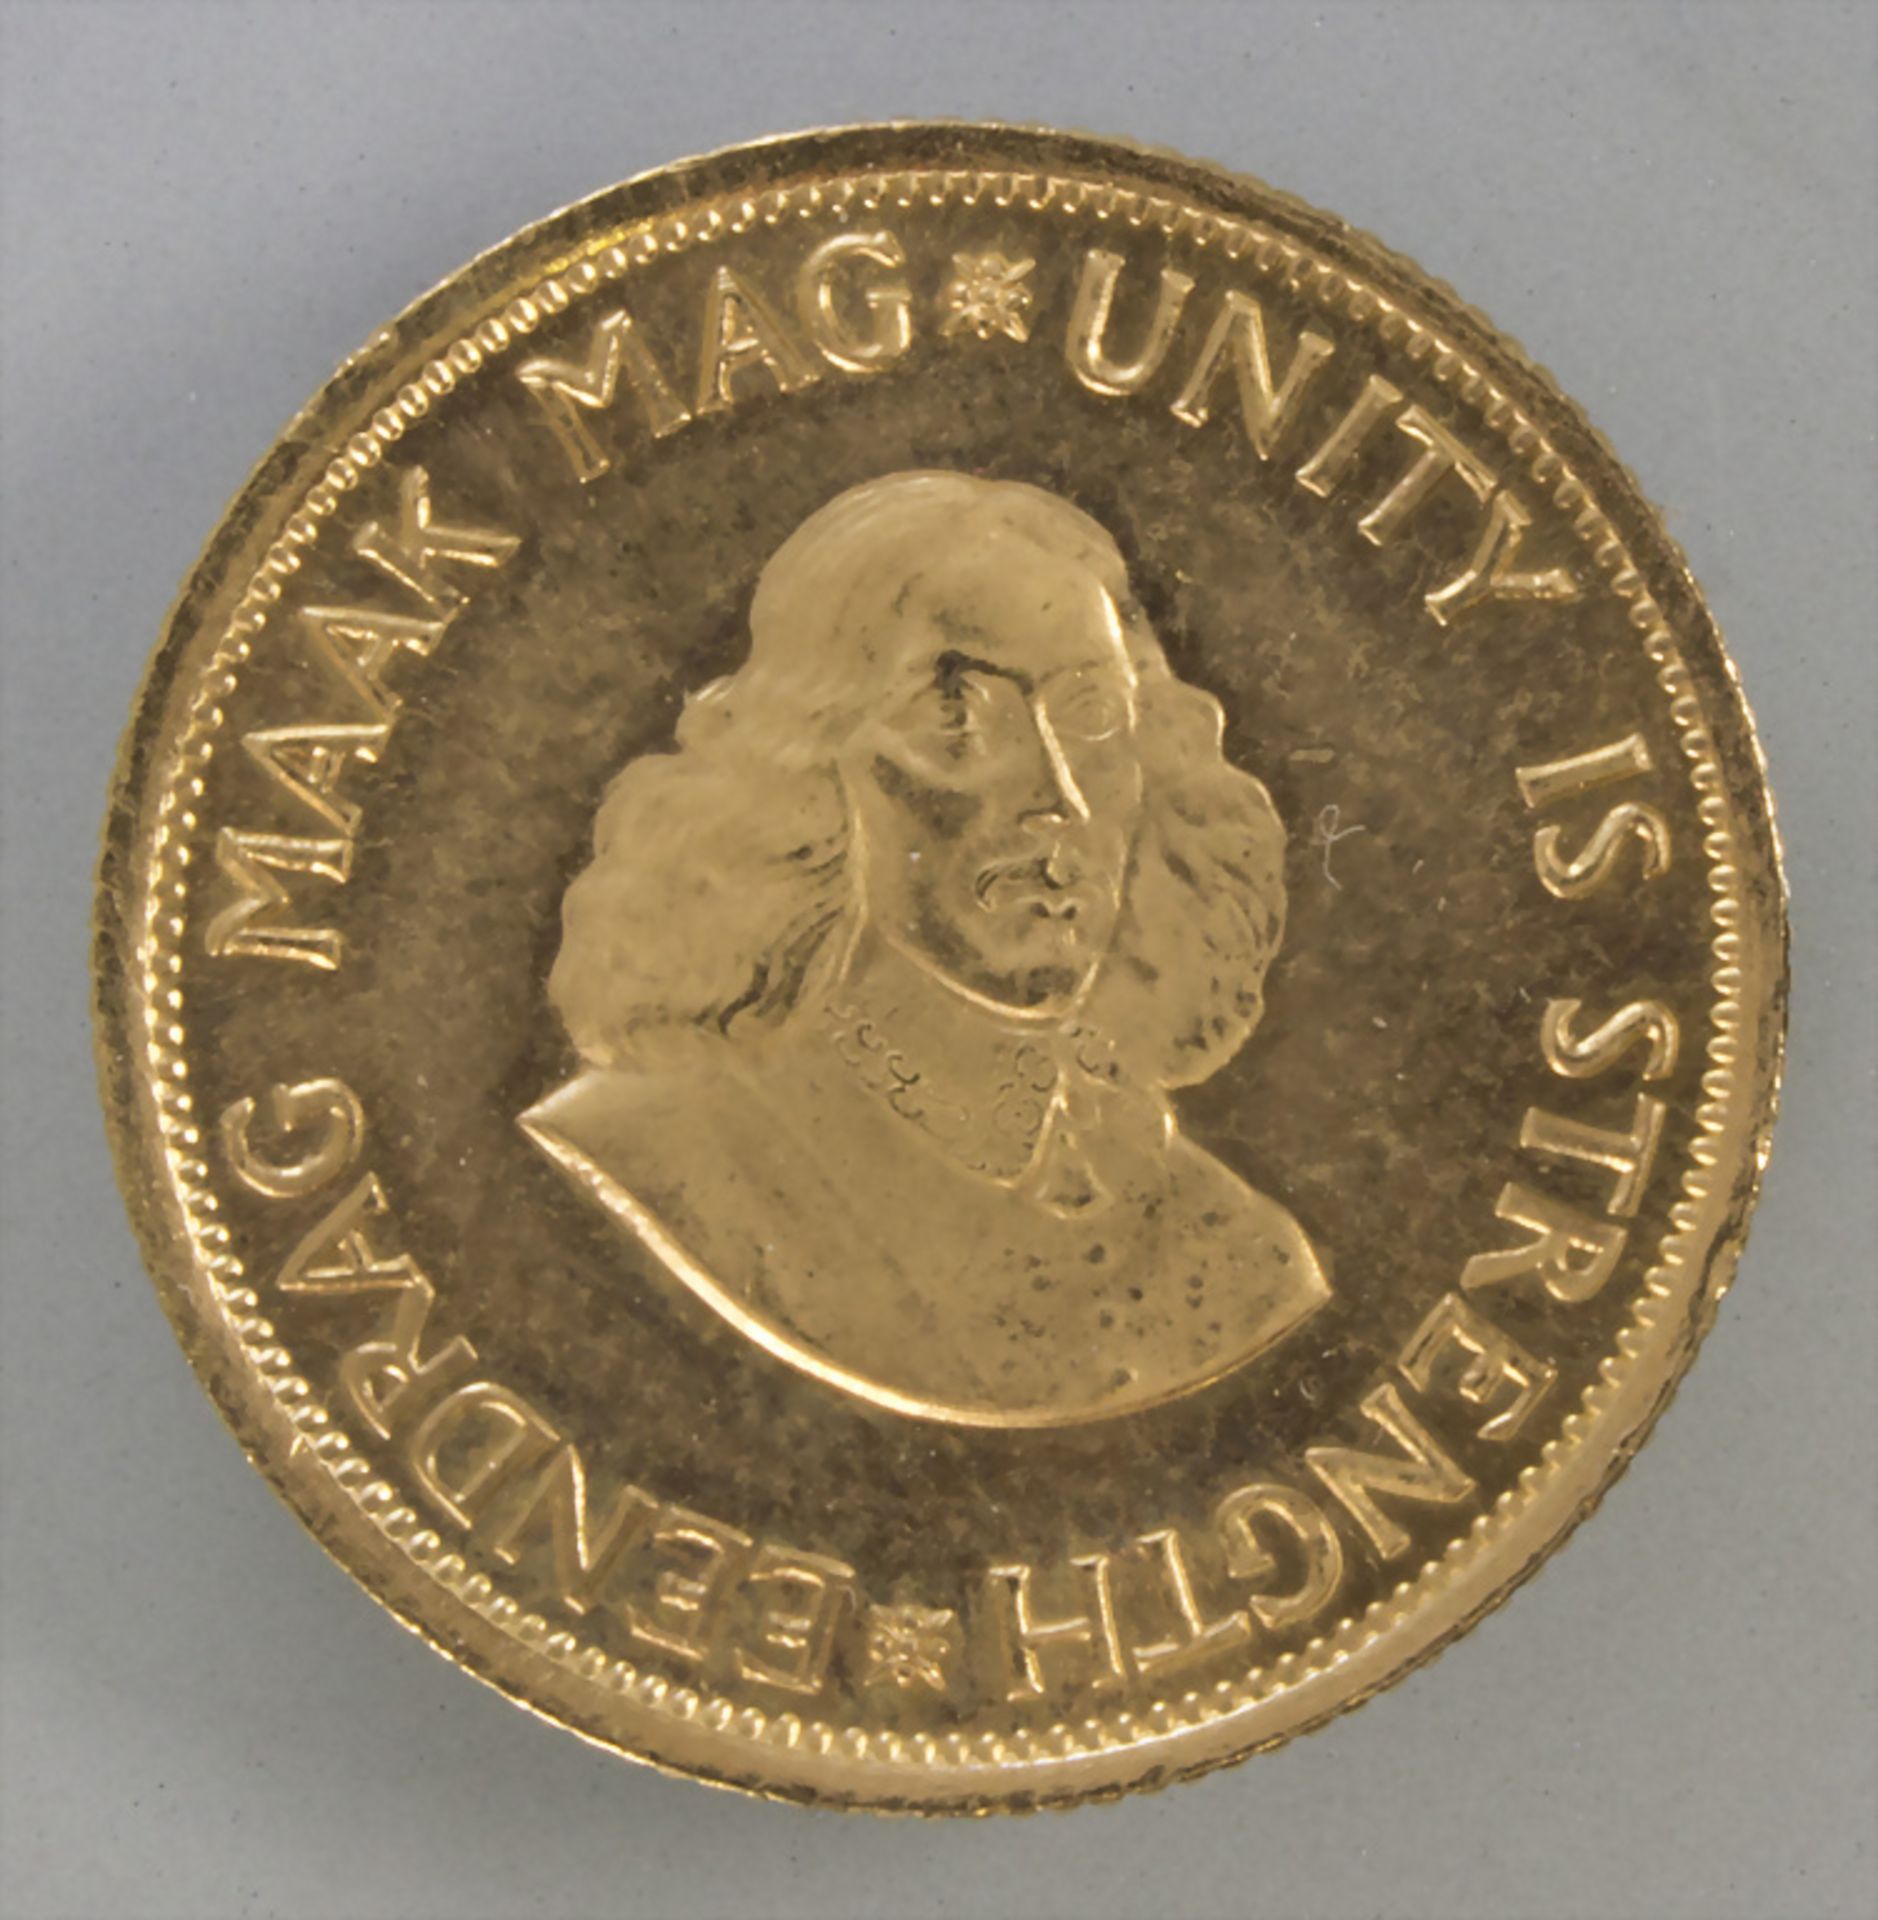 Goldmünze, Südafrika, 2 Rand, 1978 / A gold coin, South Africa, 2 rand, 1978